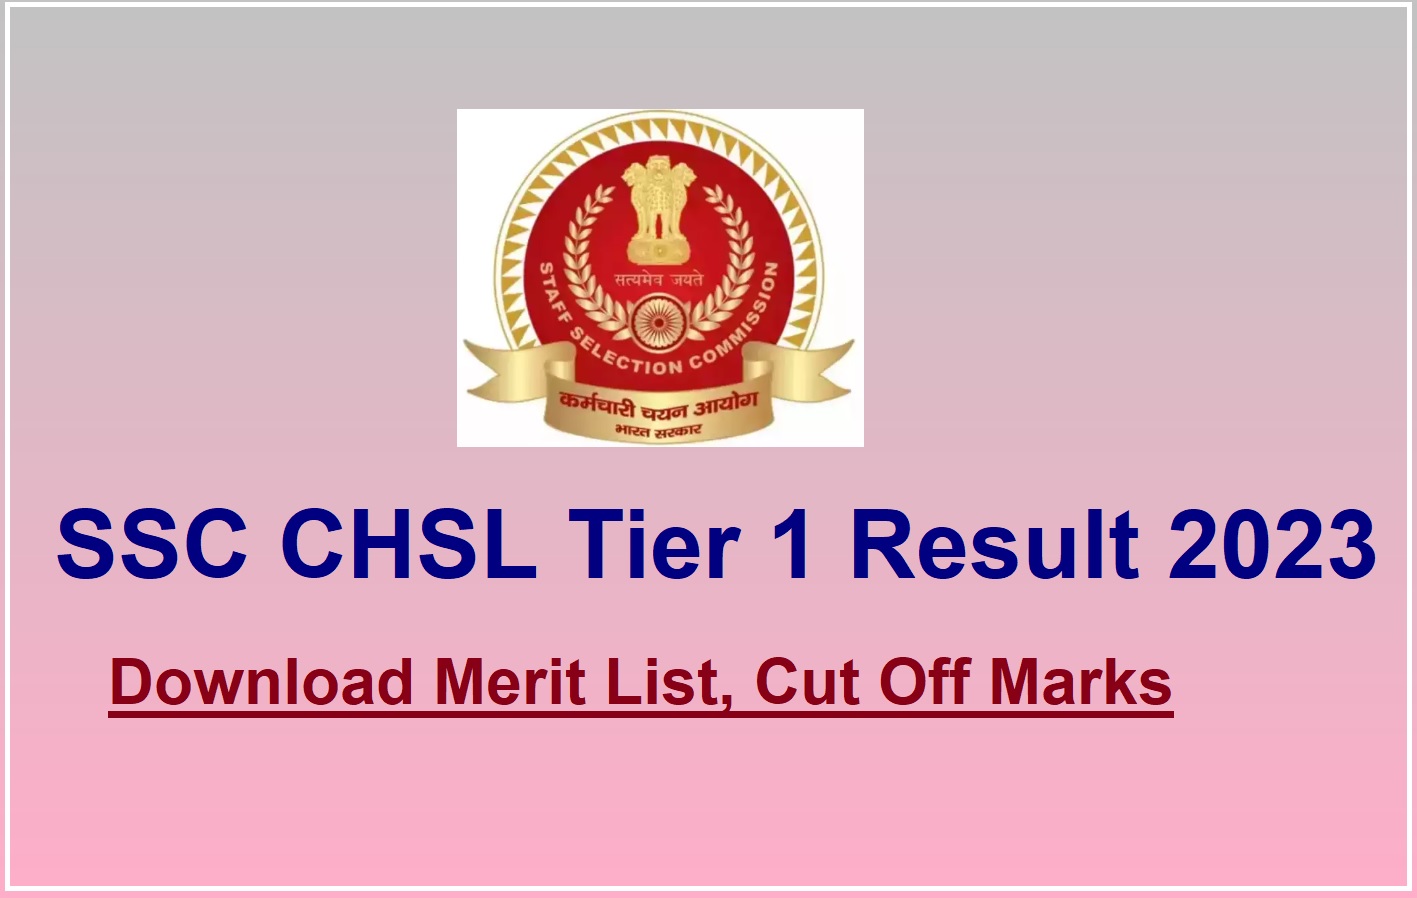 SSC CHSL Tier 1 Result 2023